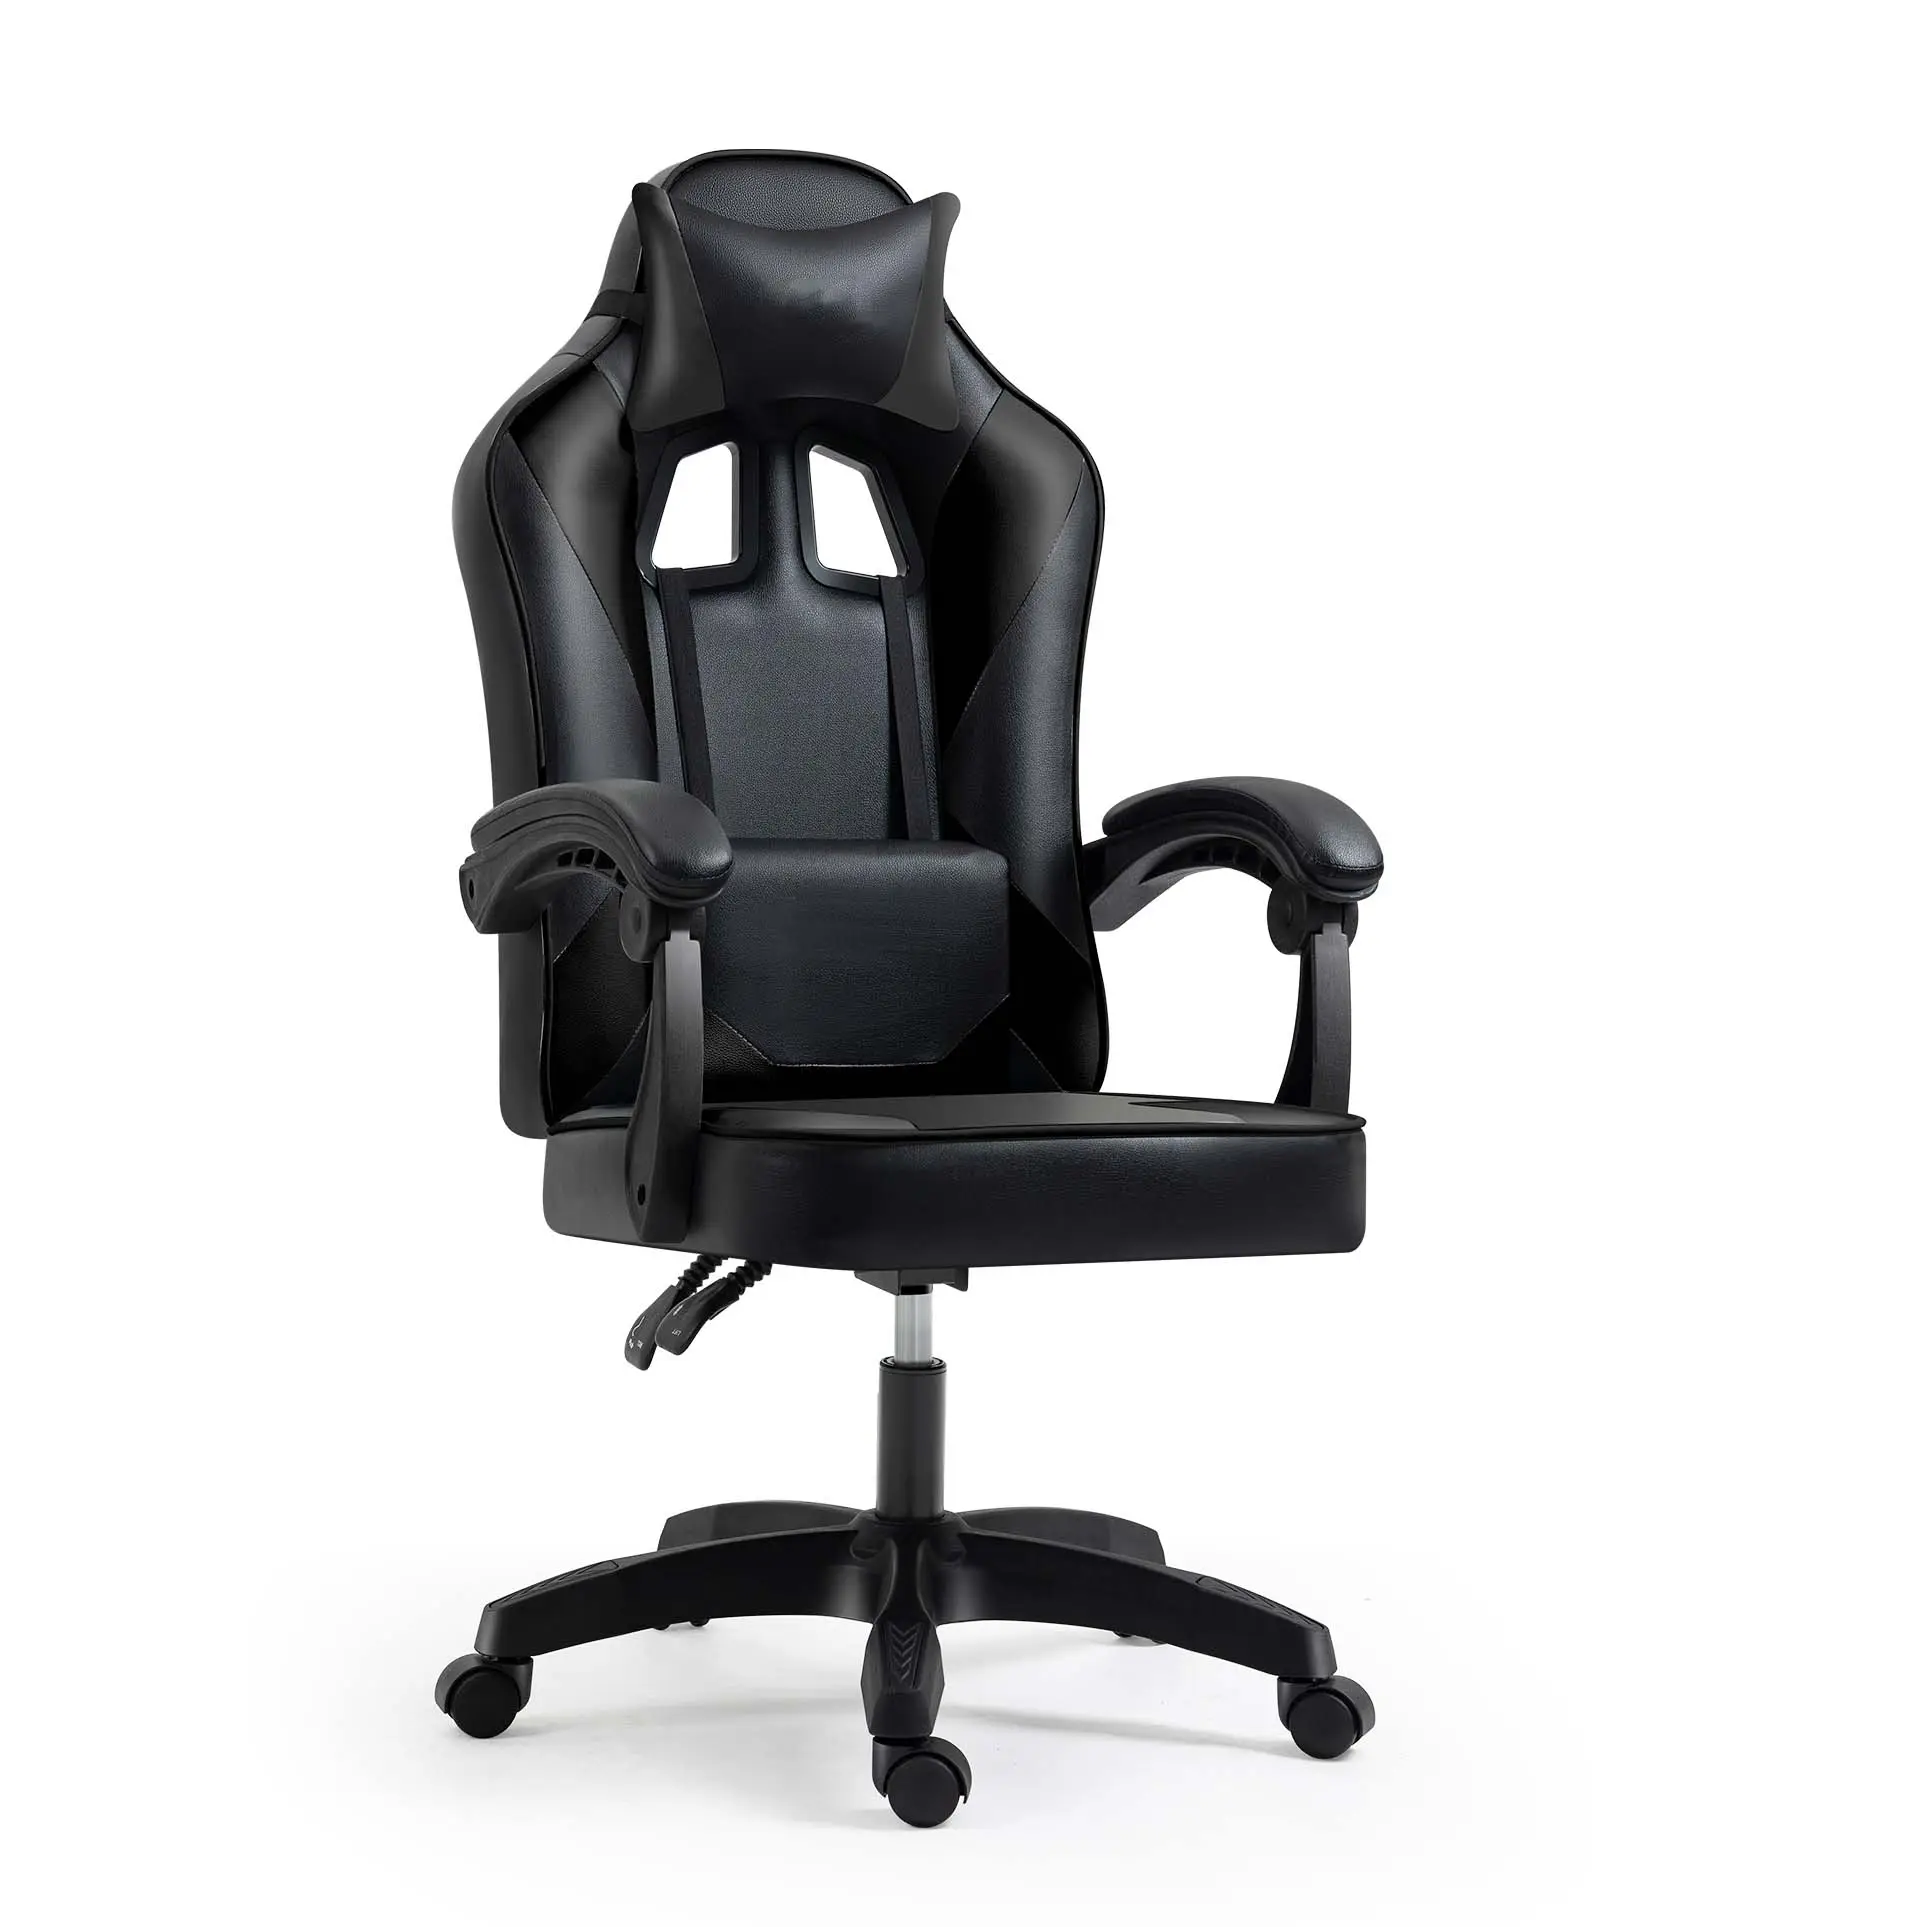 Preços sempre imbatíveis Cadeira ergonômica do jogo do escritório, Cadeira confortável traseira alta do escritório Gaming Chair, Concorrência elegante